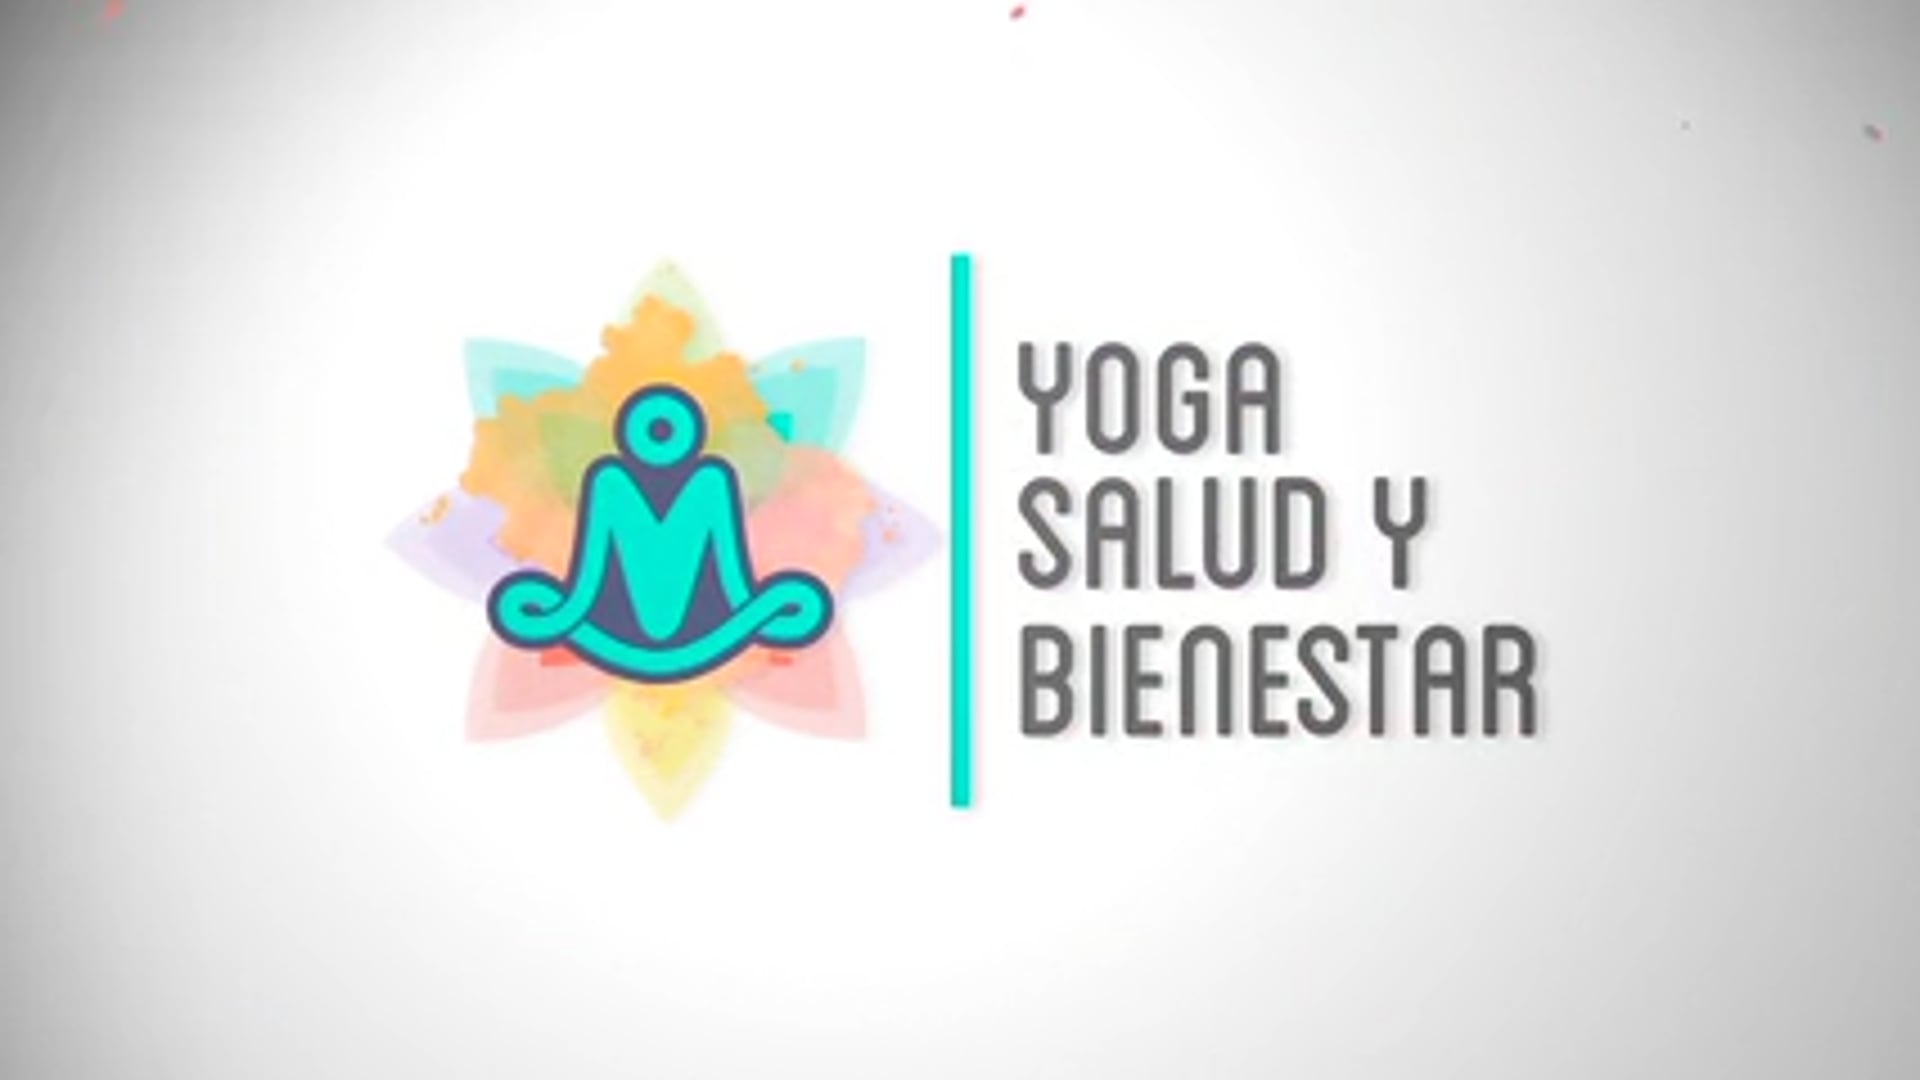 Yoga, salud y bienestar